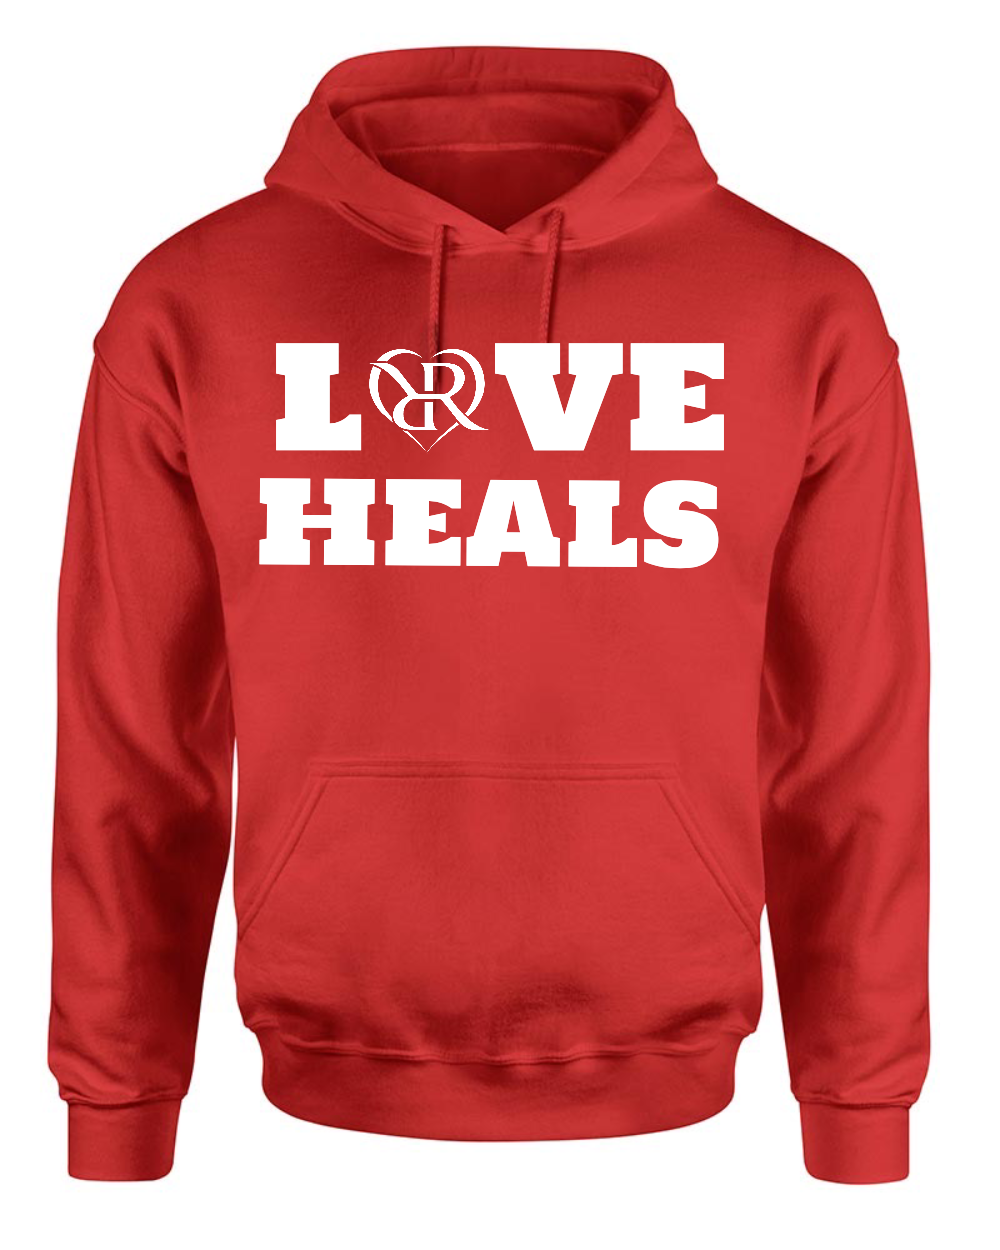 "Love Heals" Hoodie